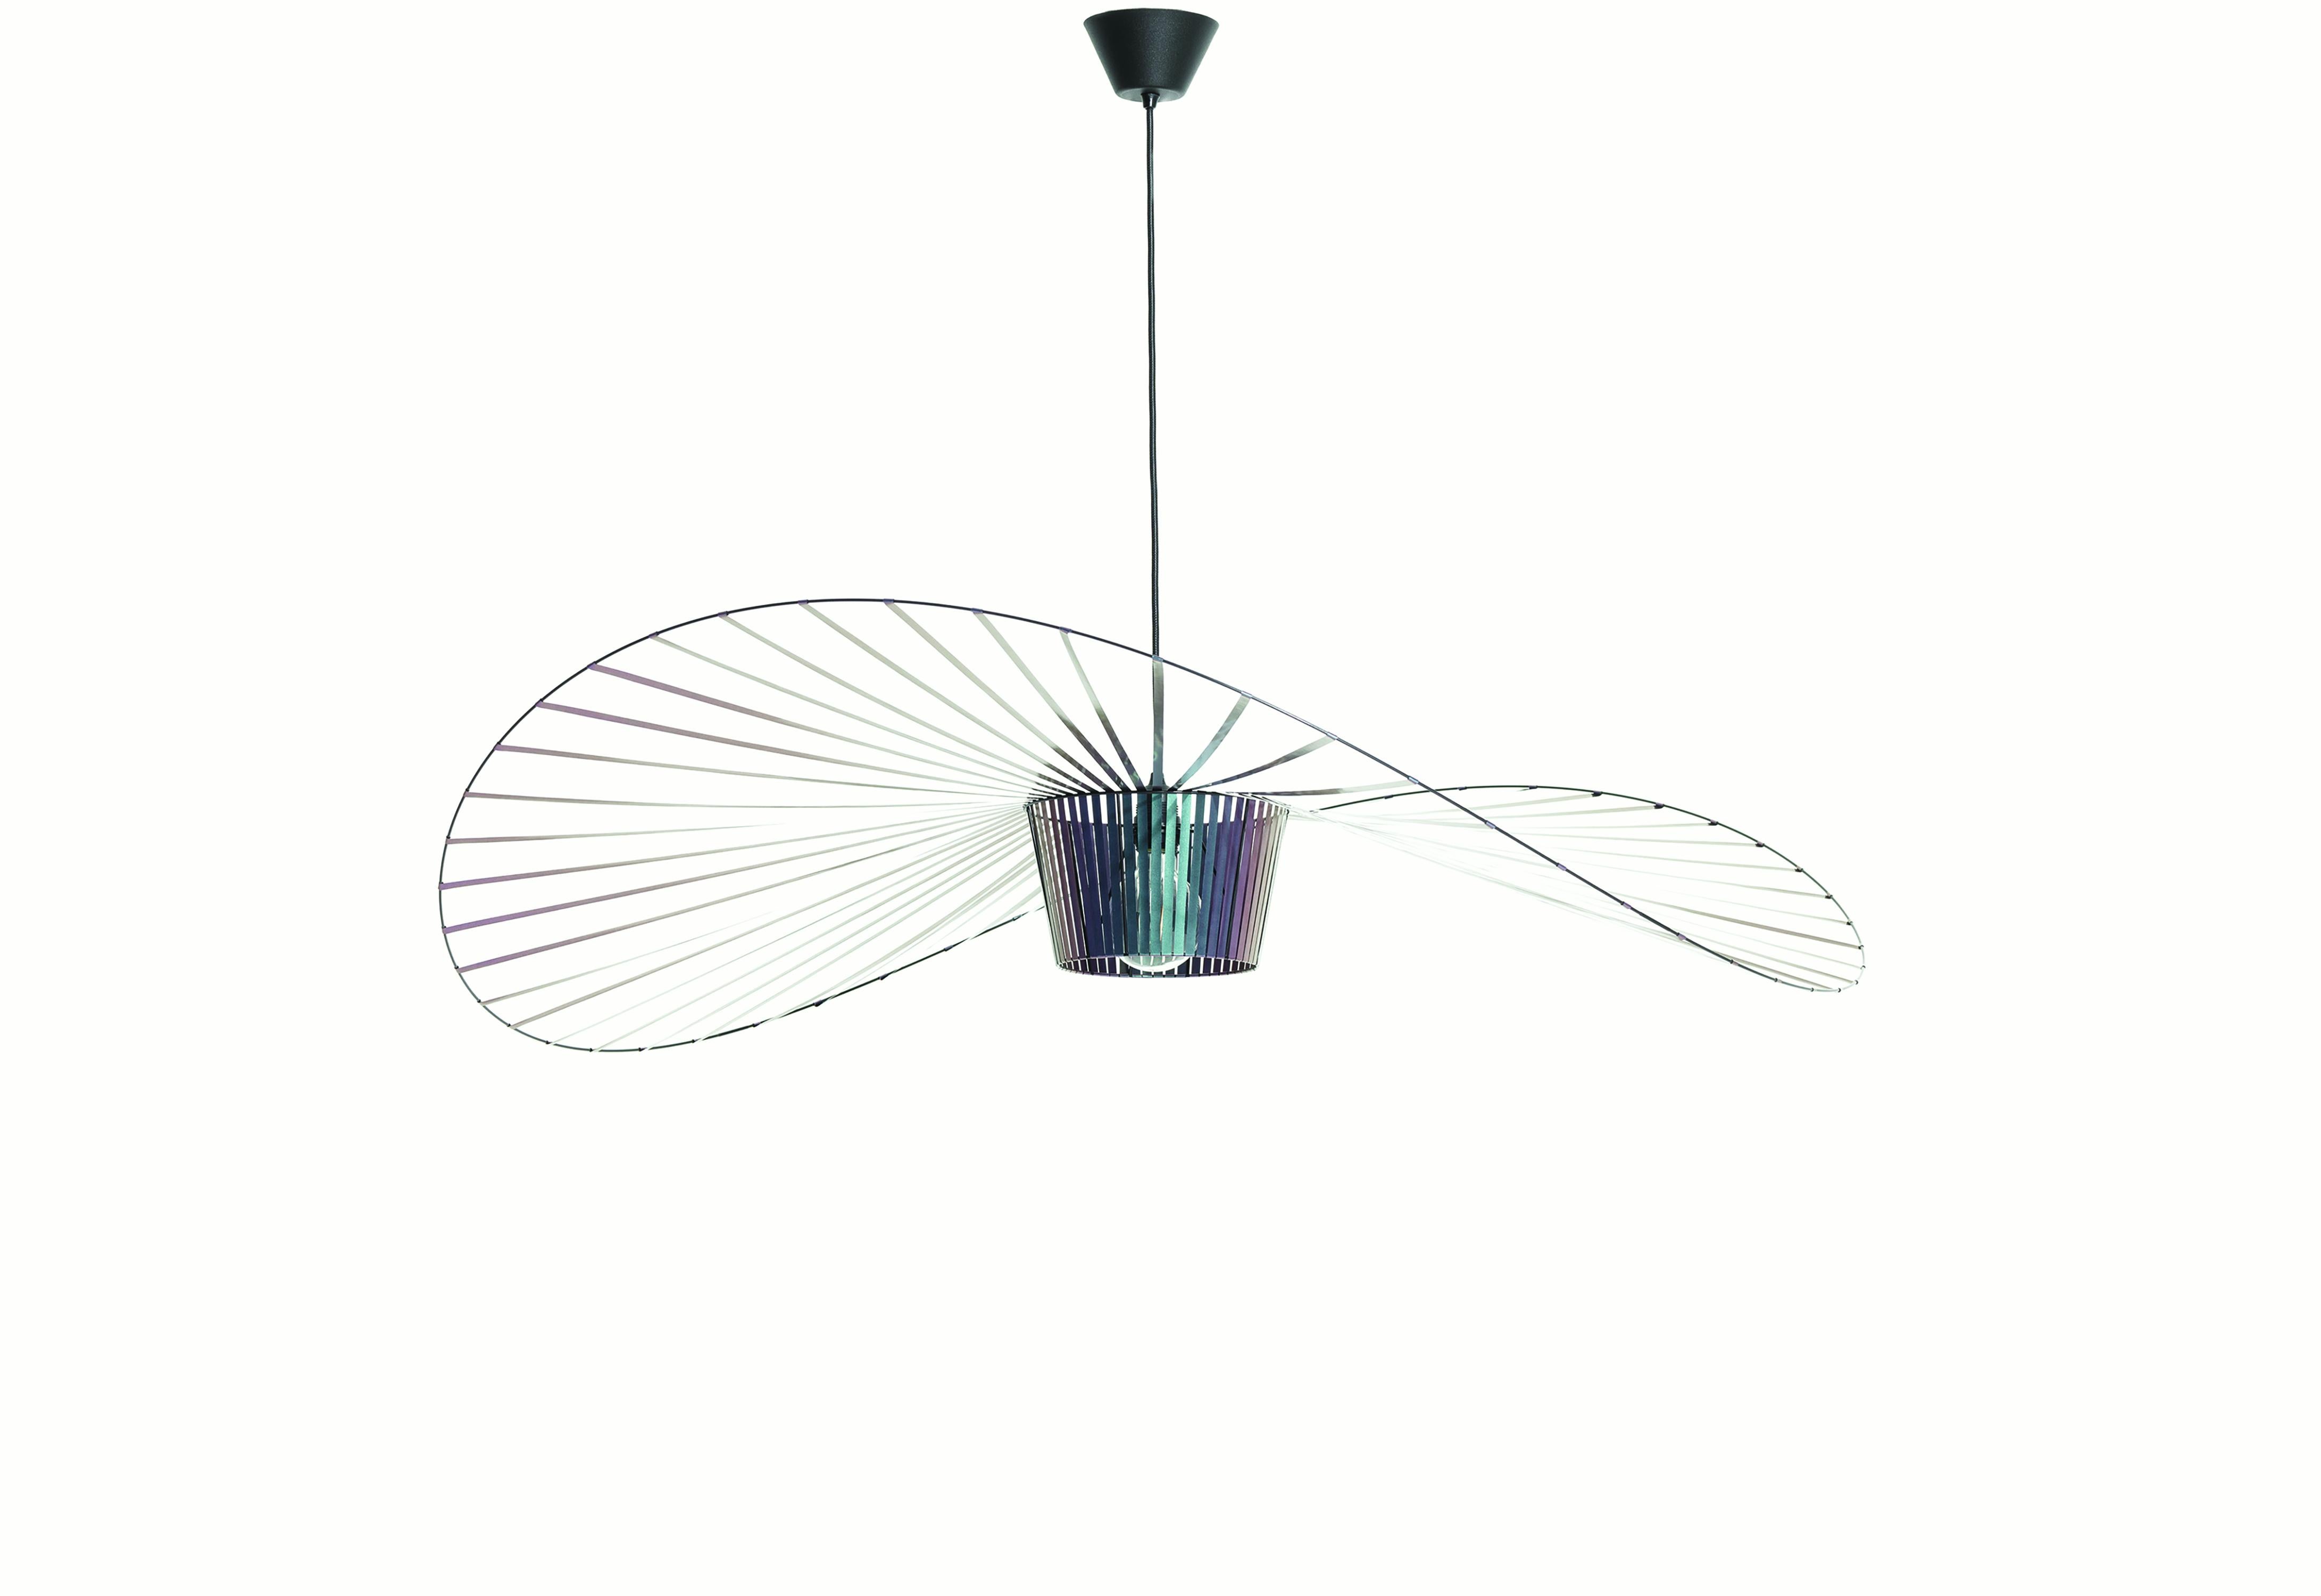 Petite Friture Medium Vertigo Suspension Light in Beetle par Constance Guisset, 2010

Éditée par Petite Friture en 2010, la suspension Vertigo est aujourd'hui une icône du design contemporain. Avec sa structure ultra-légère en fibre de verre, tendue